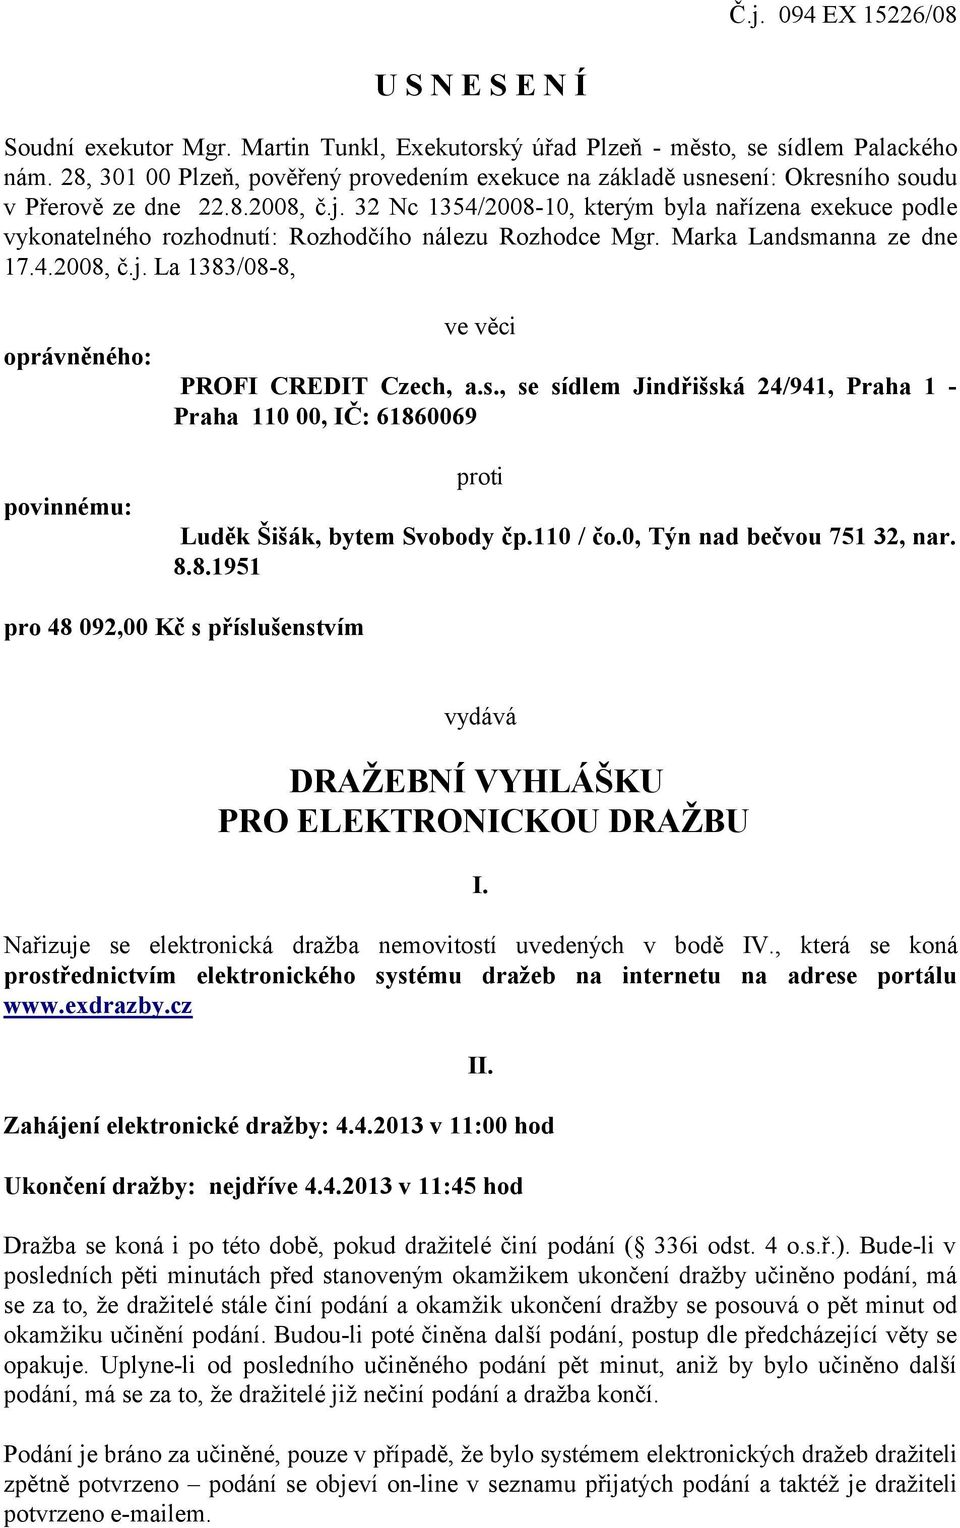 32 Nc 1354/2008-10, kterým byla nařízena exekuce podle vykonatelného rozhodnutí: Rozhodčího nálezu Rozhodce Mgr. Marka Landsmanna ze dne 17.4.2008, č.j.